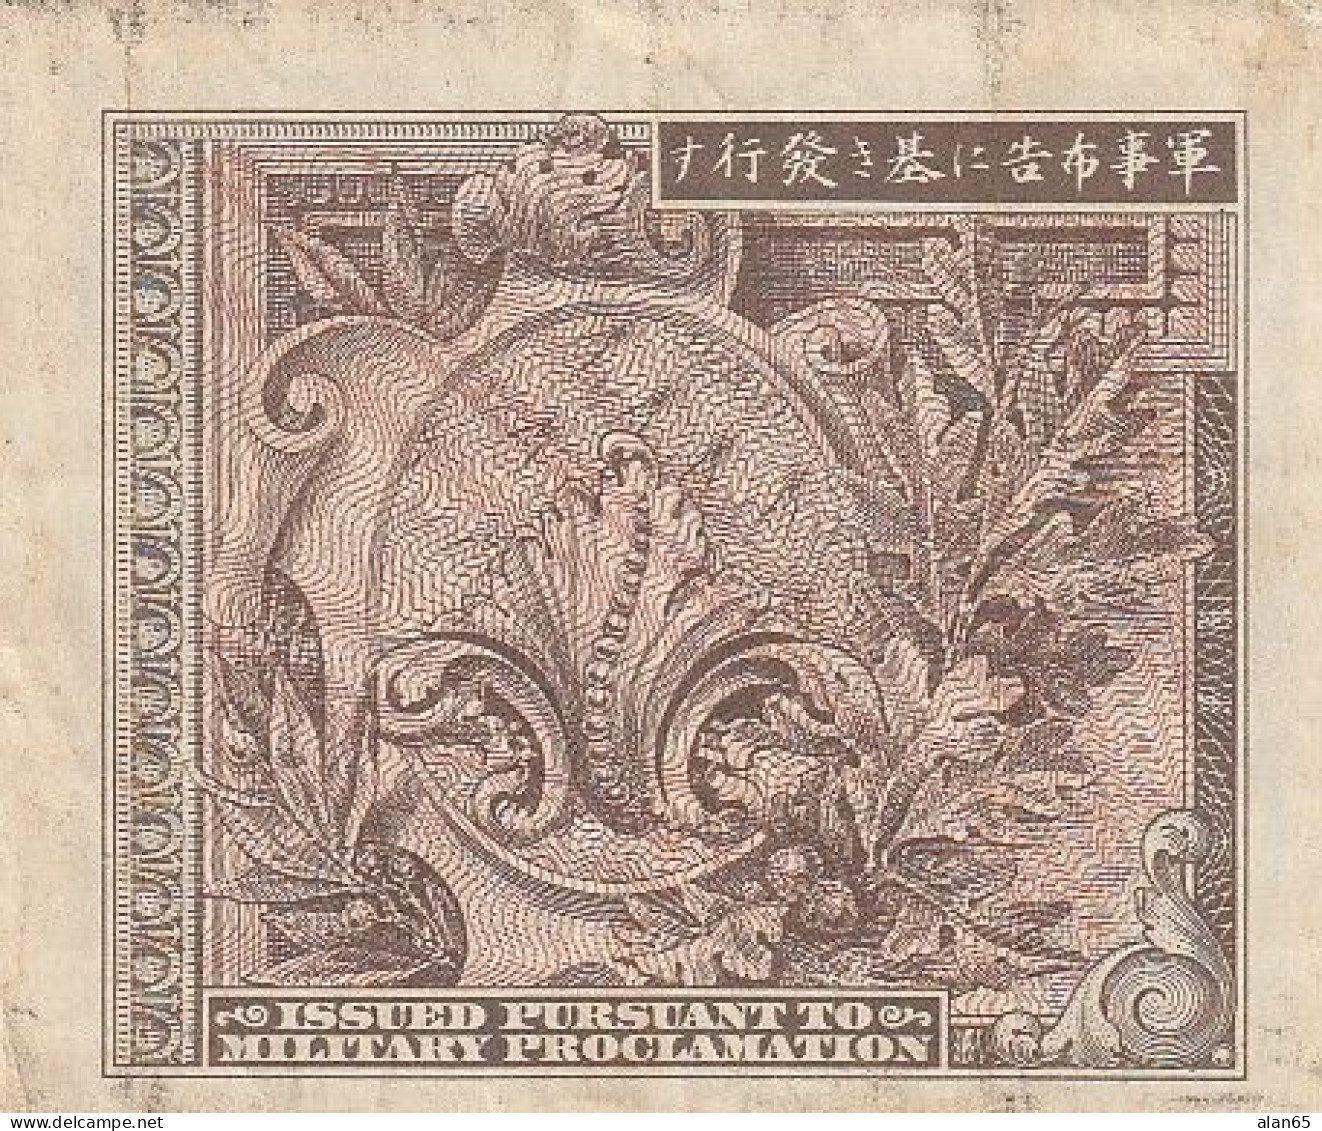 Japan #67a, 1 Yen 1945 Banknote - Japan